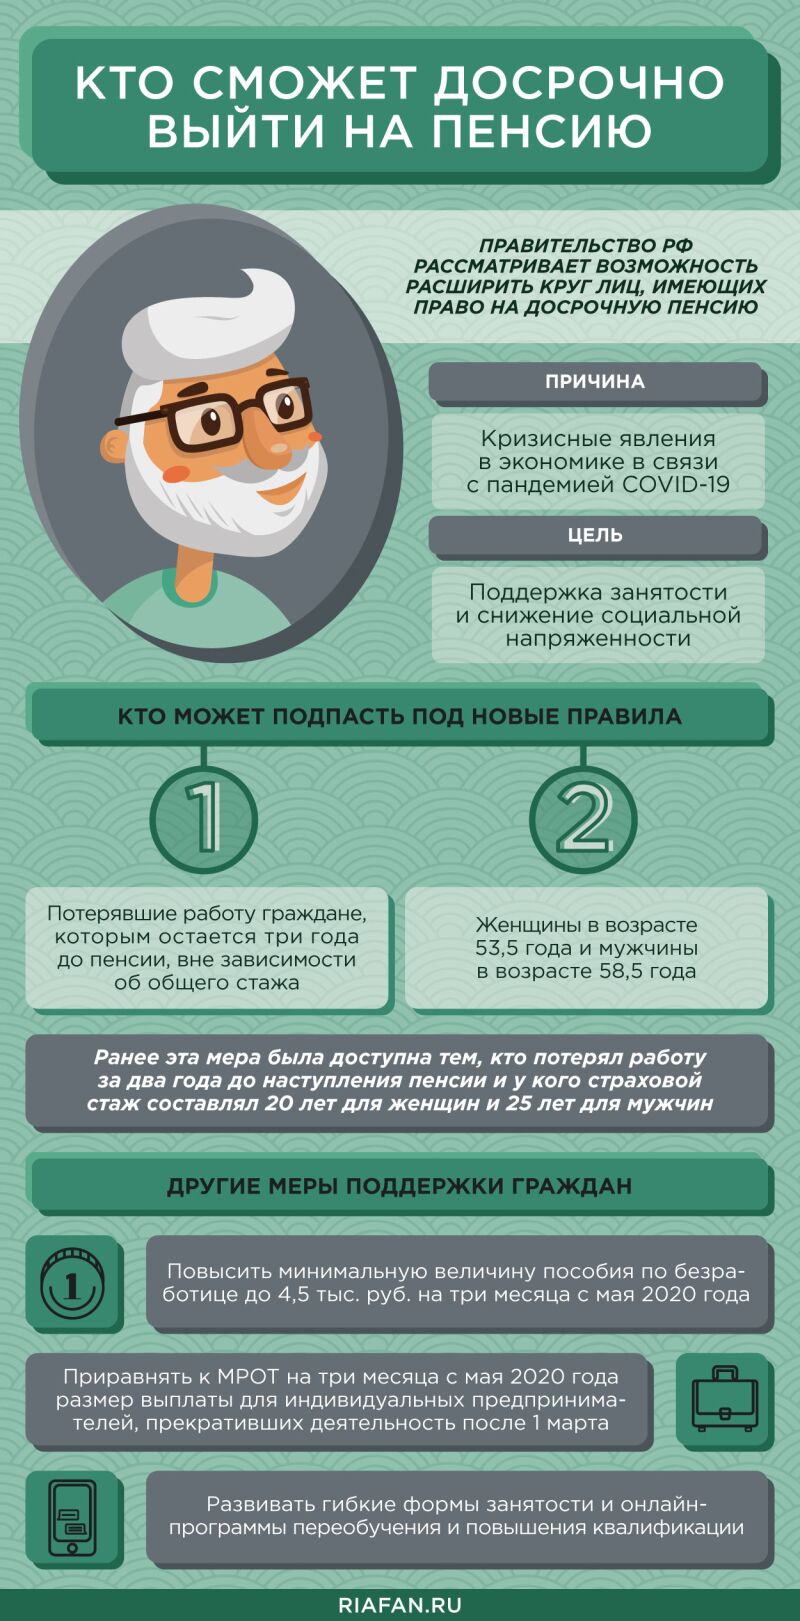 Российские пенсионеры получат новую выплату